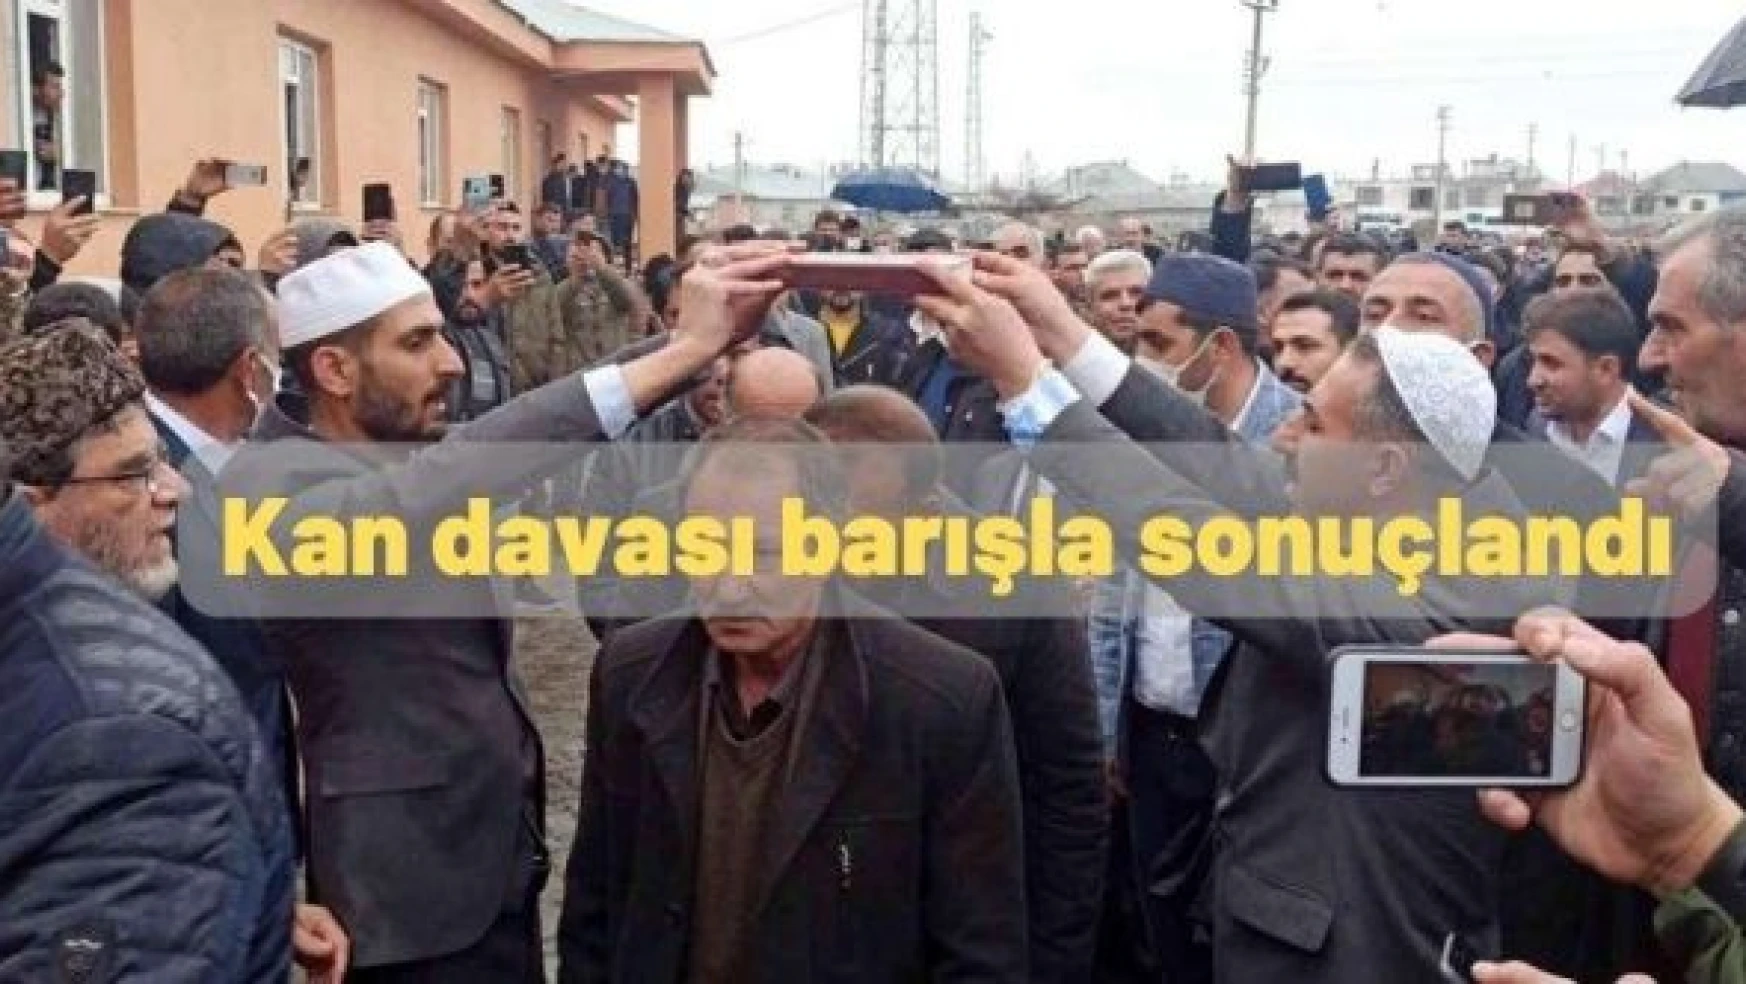 Bitlis'te 3 aile arasında yaşanan husumet barışla sonuçlandı